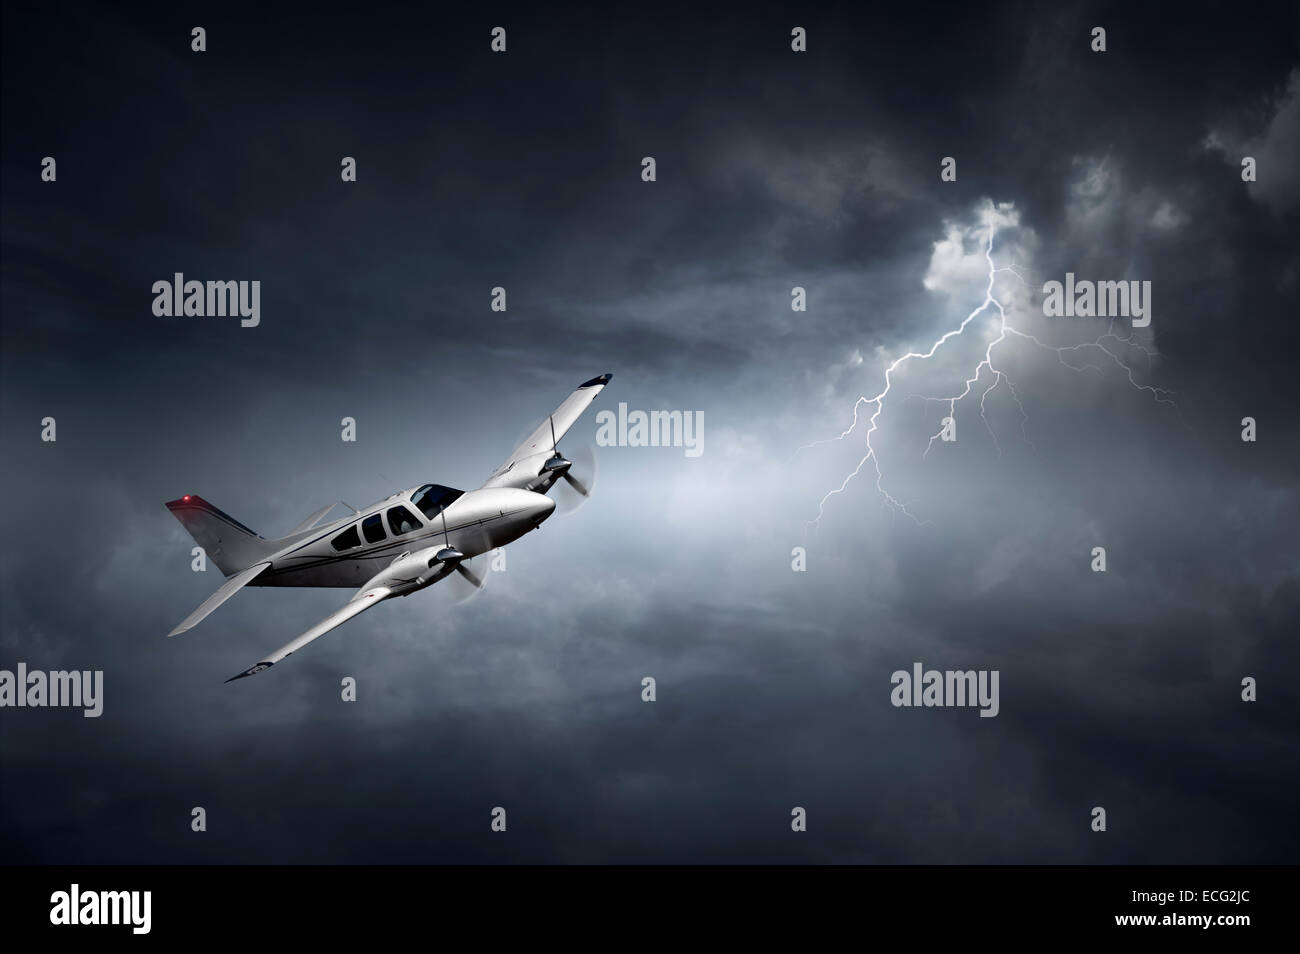 Avión volando en la tormenta con relámpagos (concepto de riesgo - una ilustración digital) Foto de stock